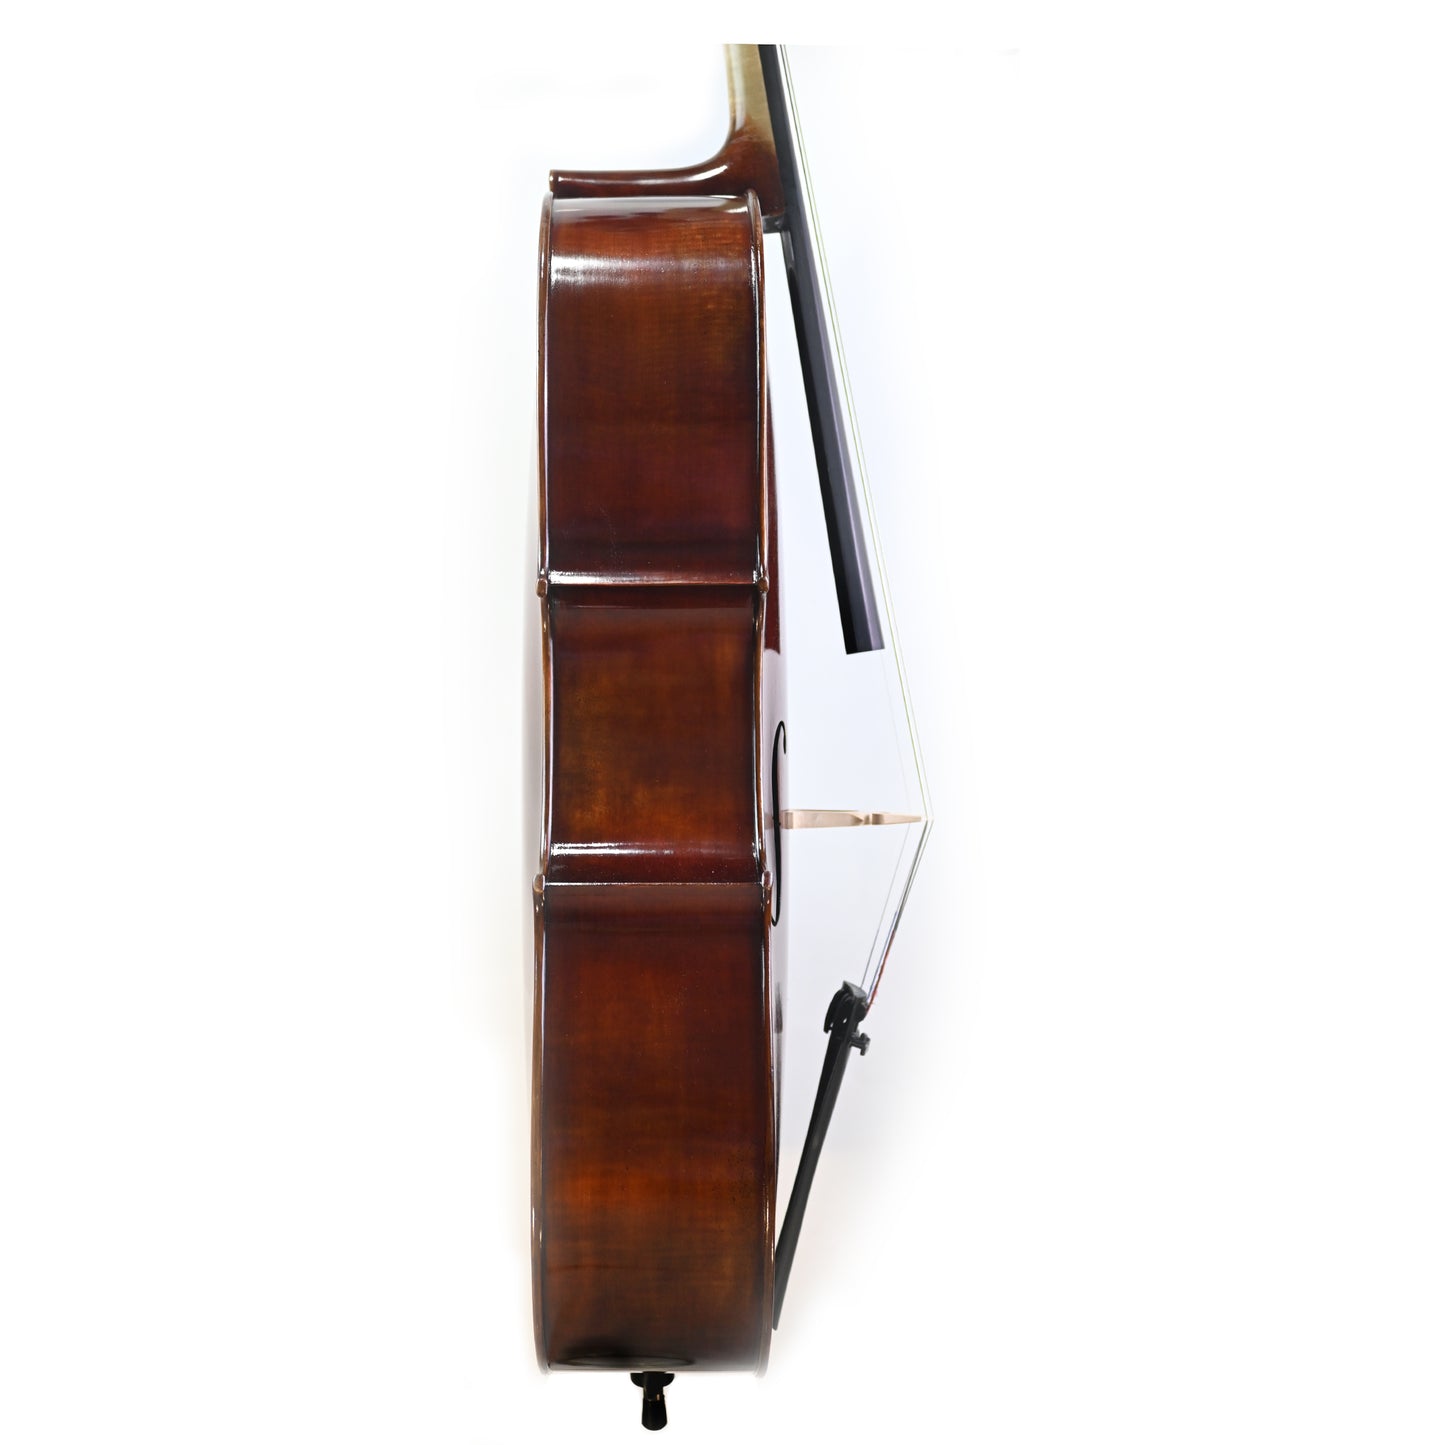 7026 beginner cello right rib